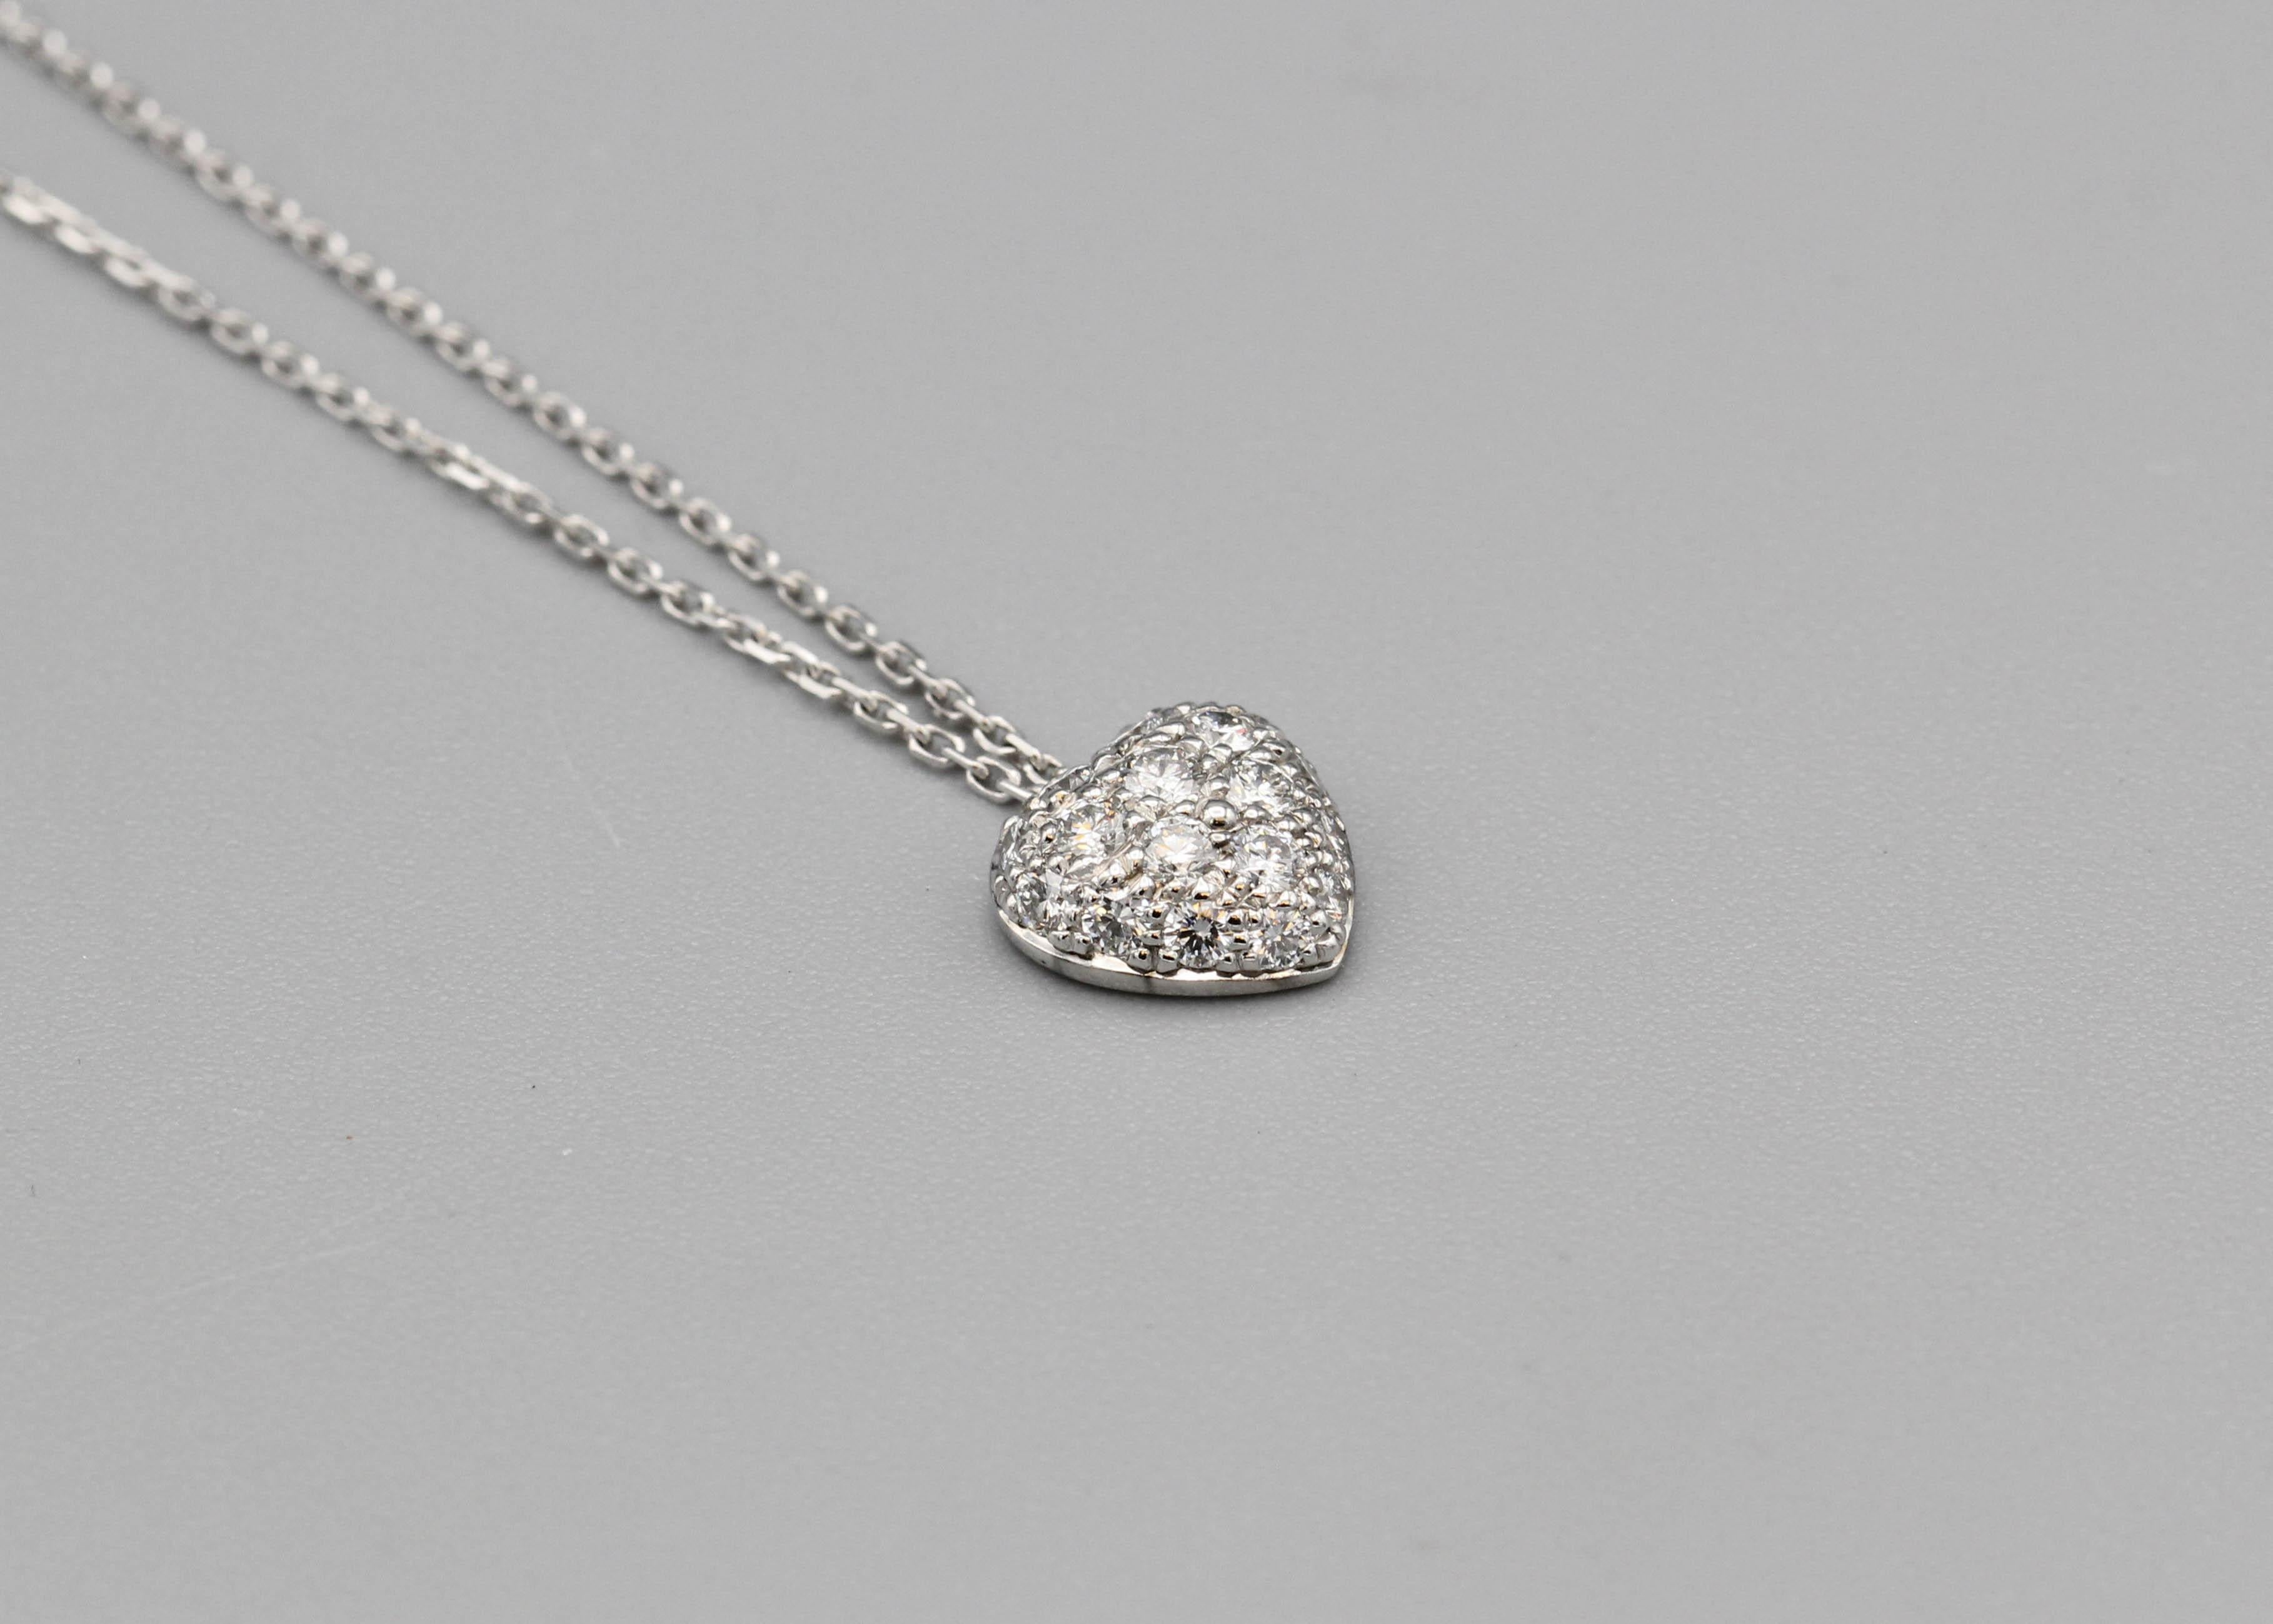 Enthüllen Sie Ihren inneren Romantiker mit der Cartier Diamond 18k White Gold Heart Shaped Pendant Necklace, einem Symbol der Liebe und Eleganz, das die Essenz der zeitlosen Handwerkskunst von Cartier einfängt. Diese exquisite Anhänger-Halskette